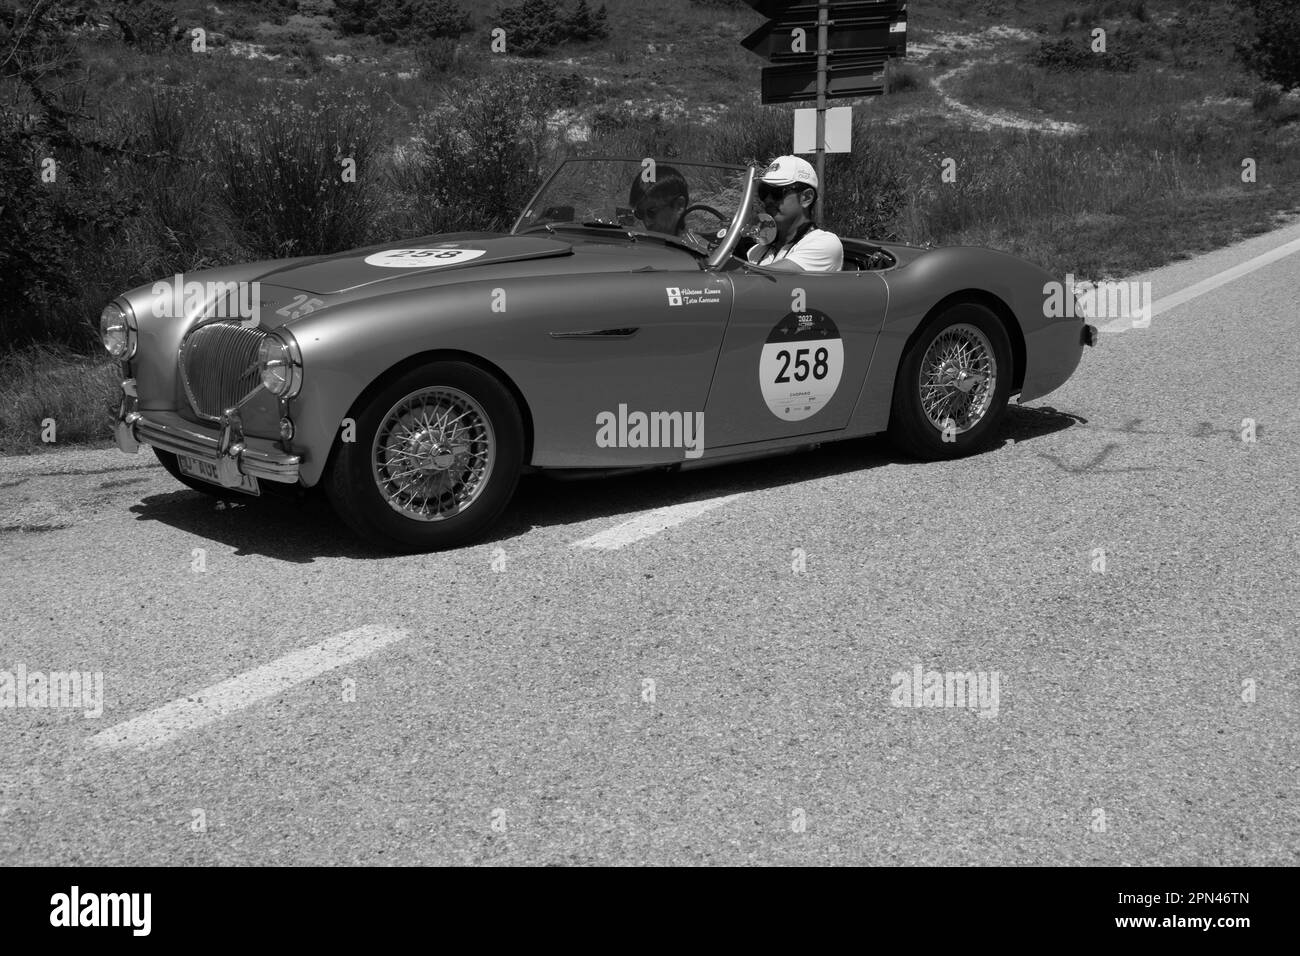 URBINO, ITALIE - 16 - 2022 JUIN : AUSTIN HEALEY 100 4 1953 sur une vieille voiture de course en rallye mille Miglia 2022 la célèbre course historique italienne Banque D'Images